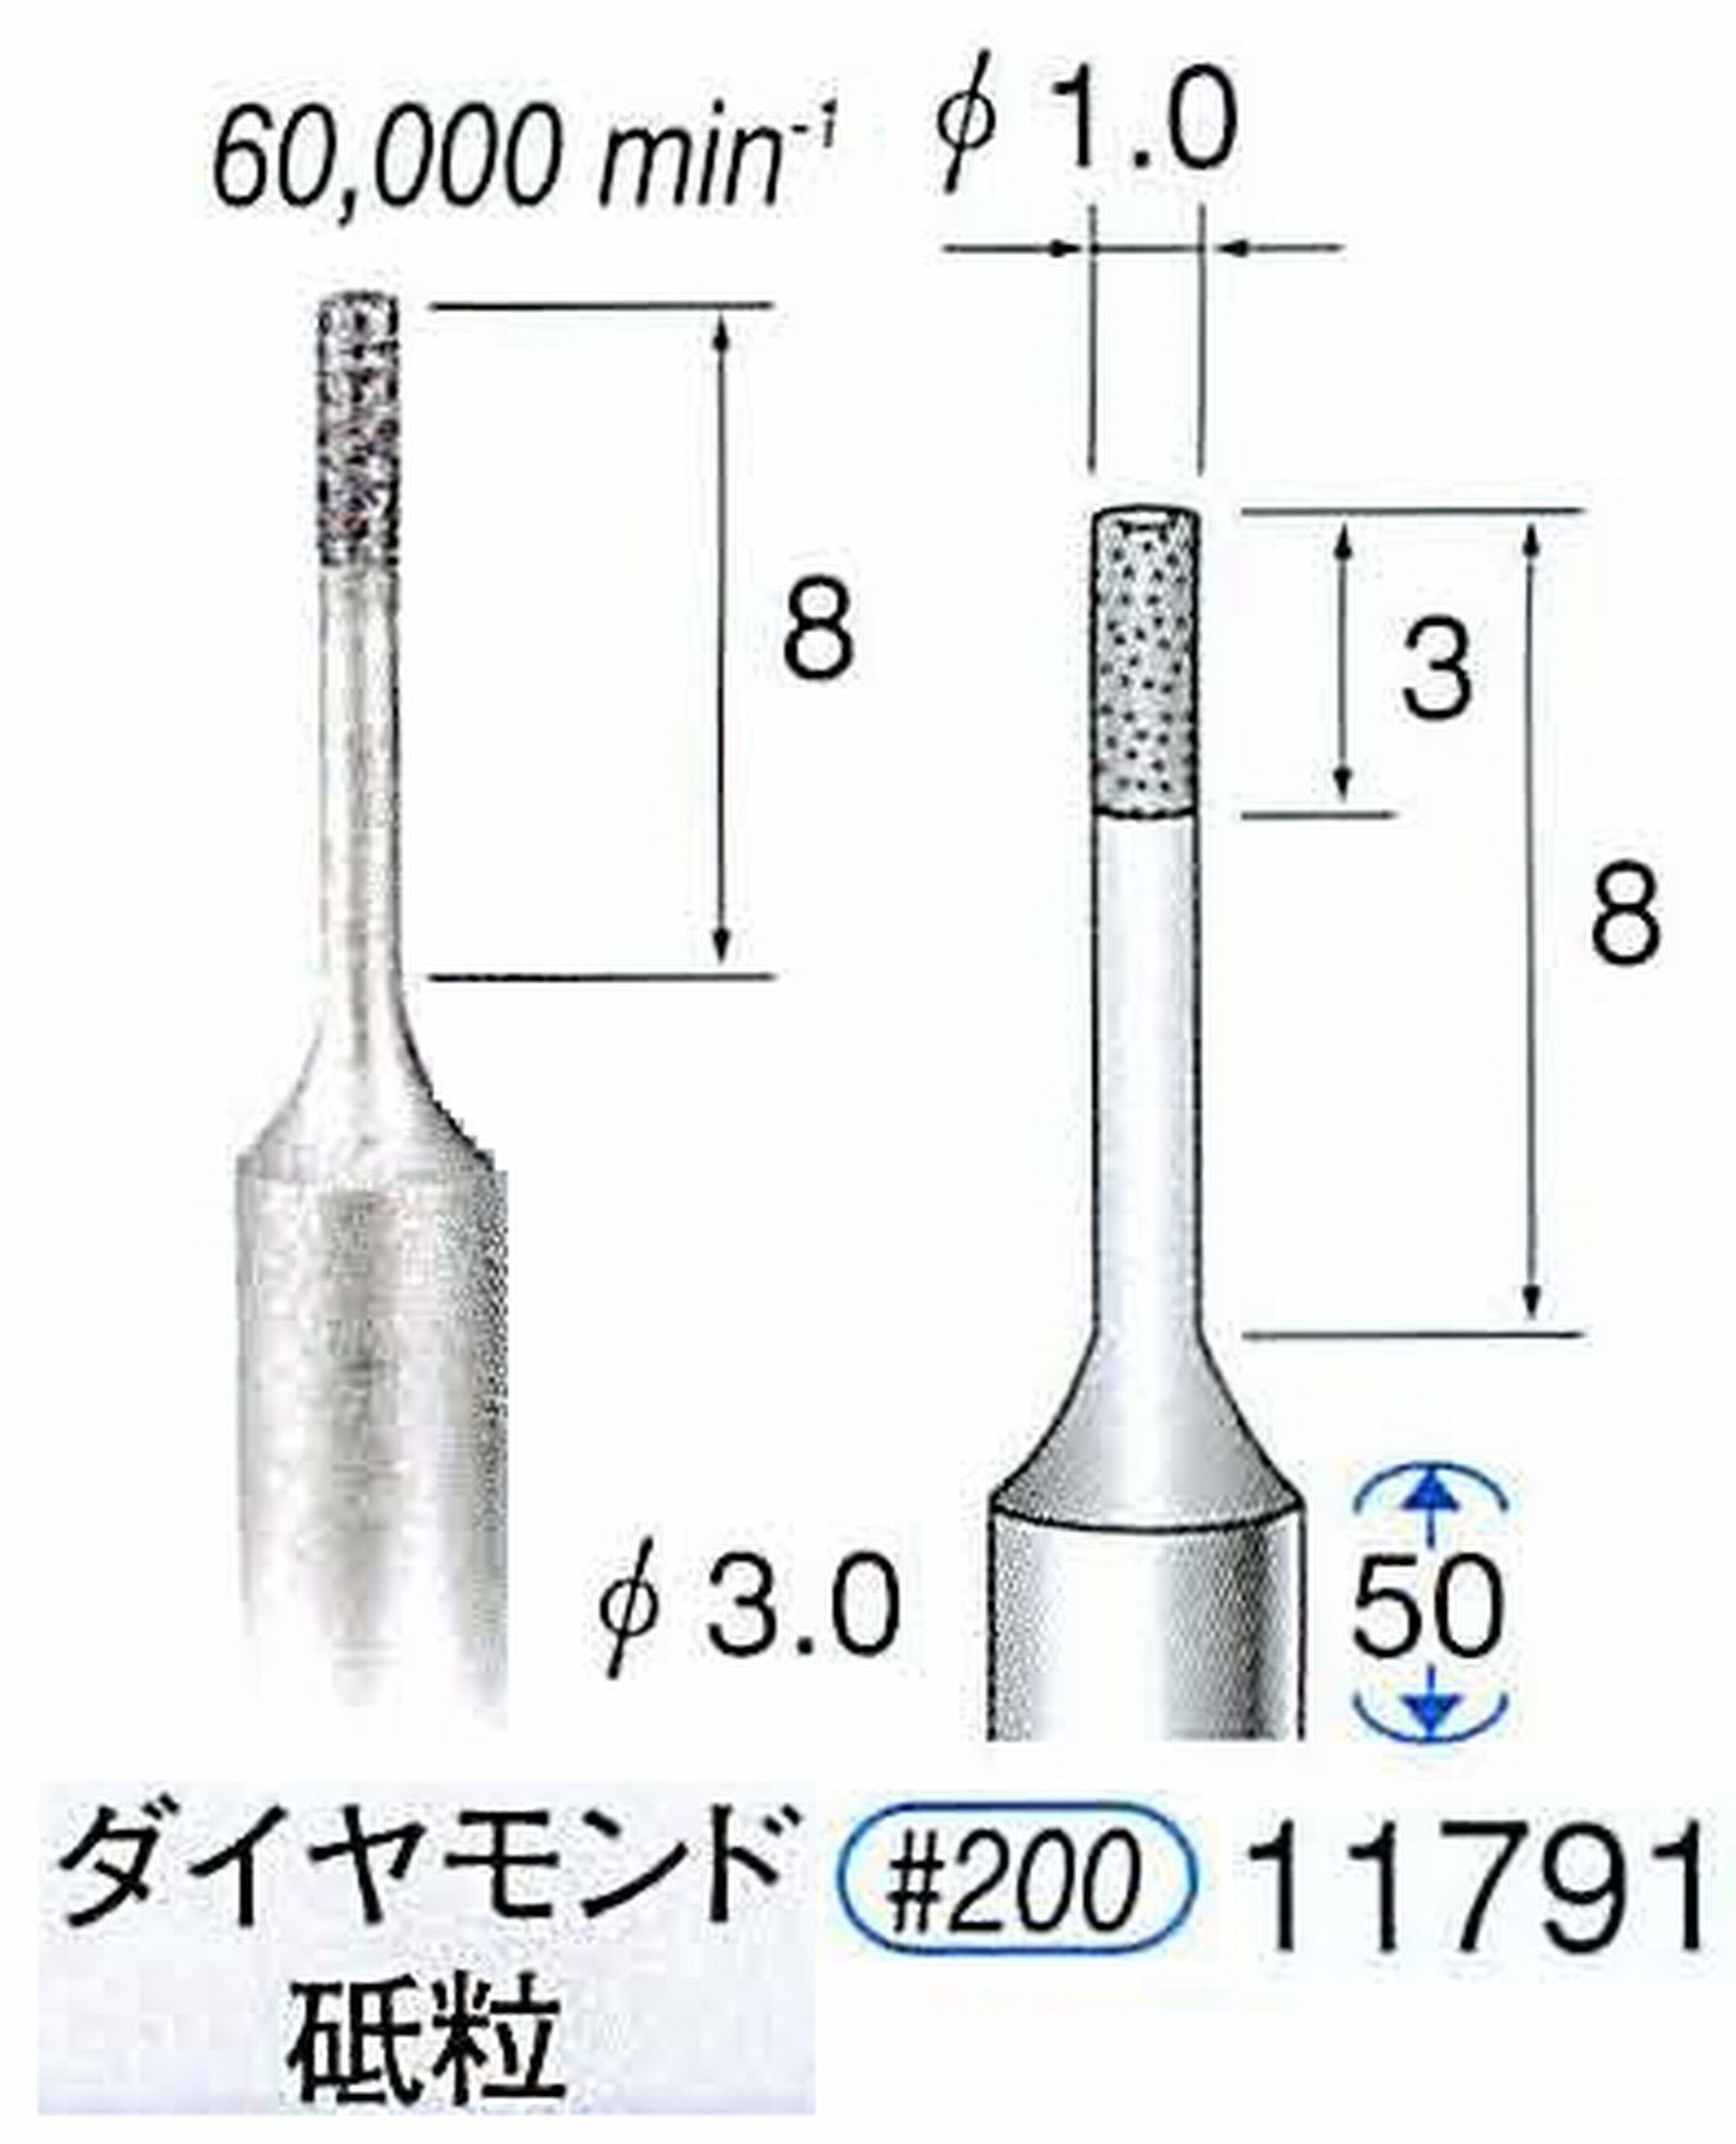 ナカニシ/NAKANISHI SP電着ダイヤモンド ダイヤモンド砥粒 軸径(シャンク)φ3.0mm 11791